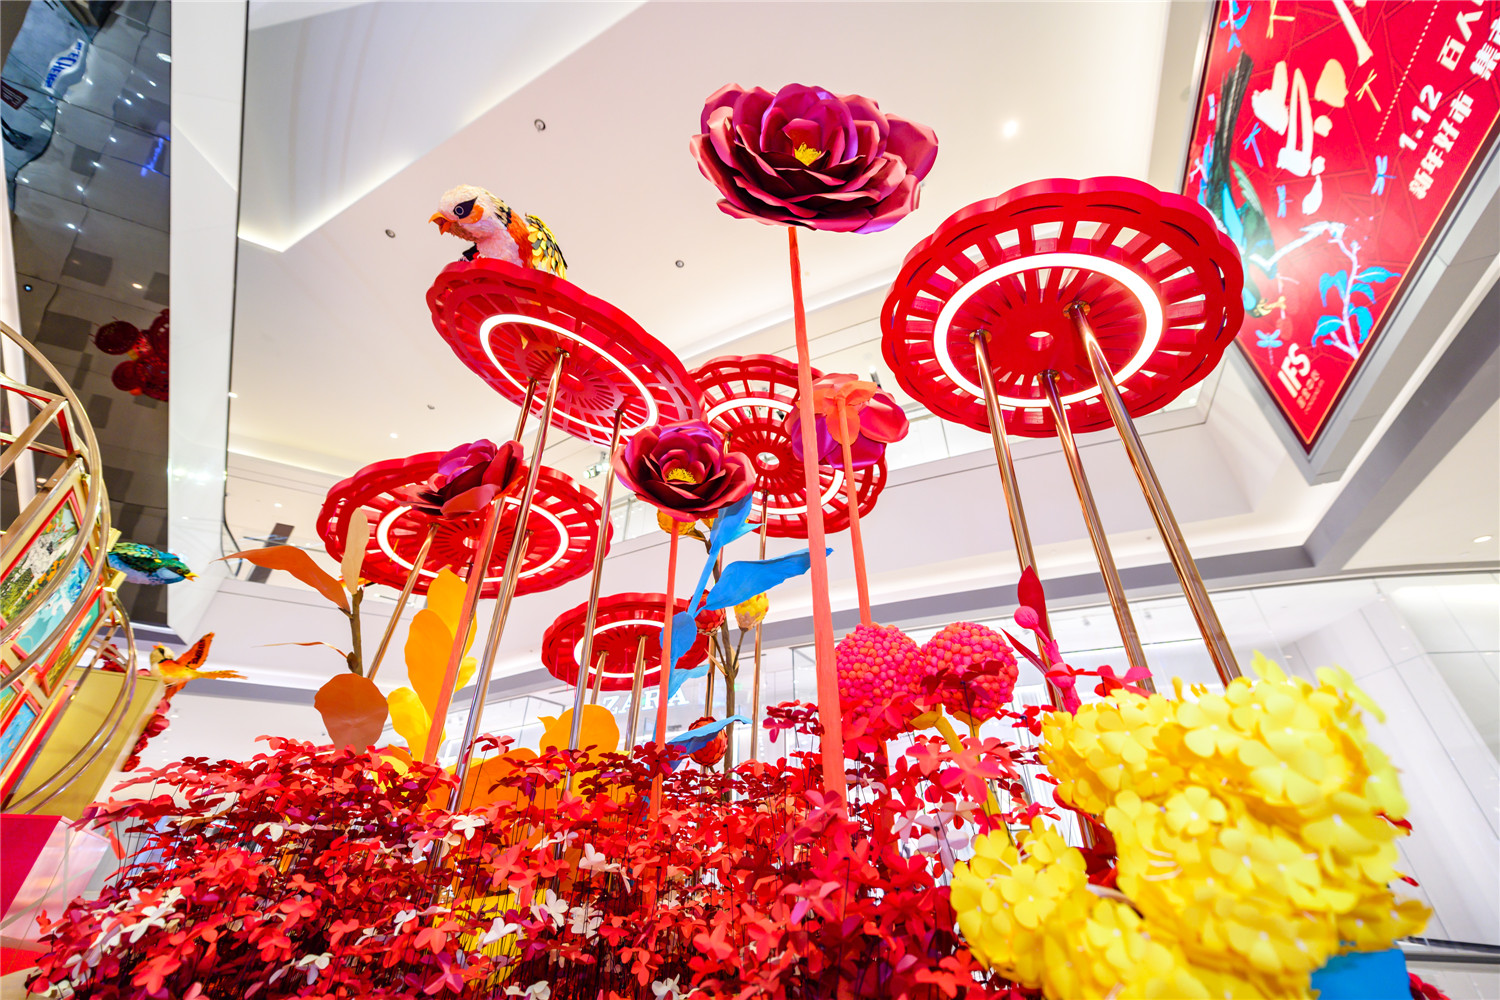 重庆IFS迎新年 携手国际艺术家打造“点愿喜飞”新春艺术装置